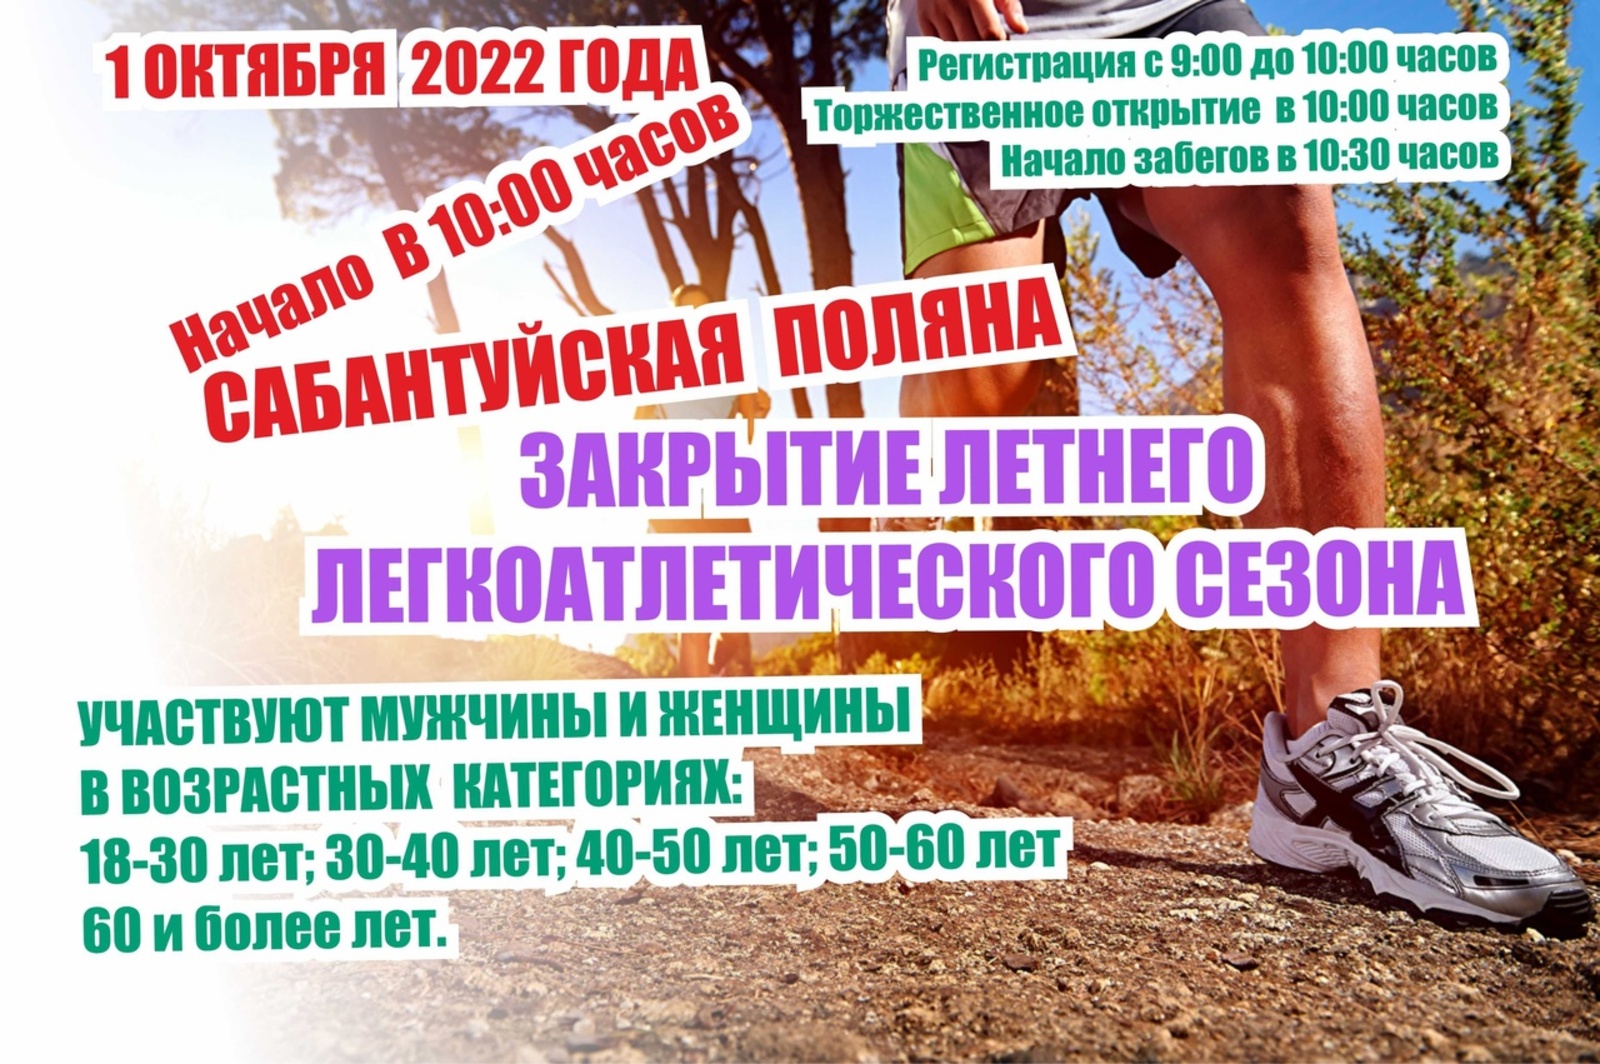 1 октября на Сабантуйской поляне с. Бижбуляк состоится закрытие легкоатлетического сезона